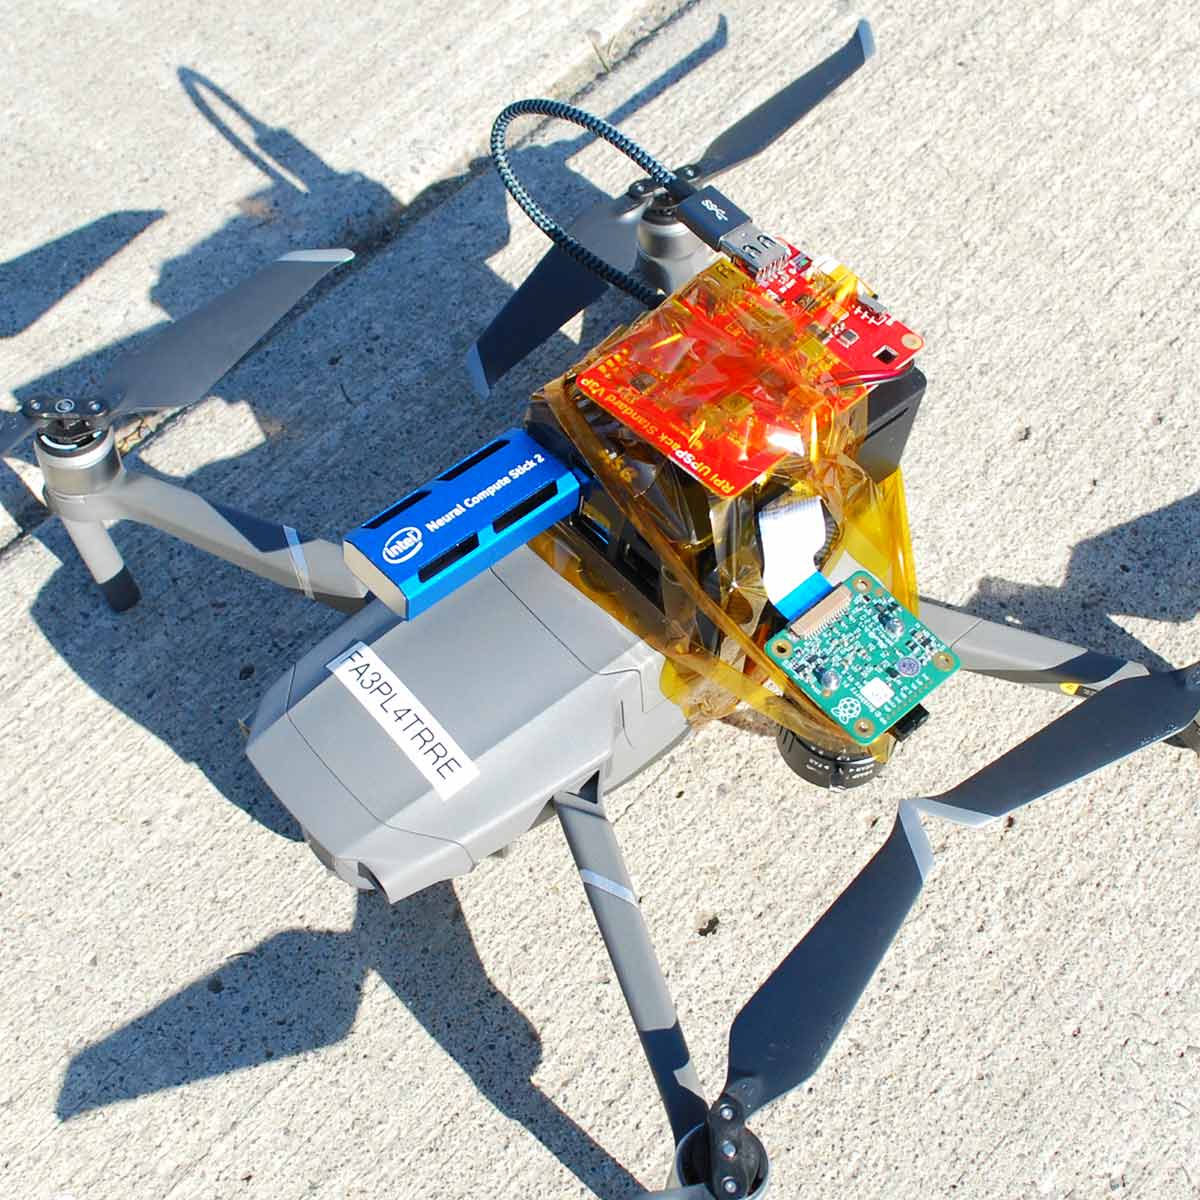 Capstone Project - Drone